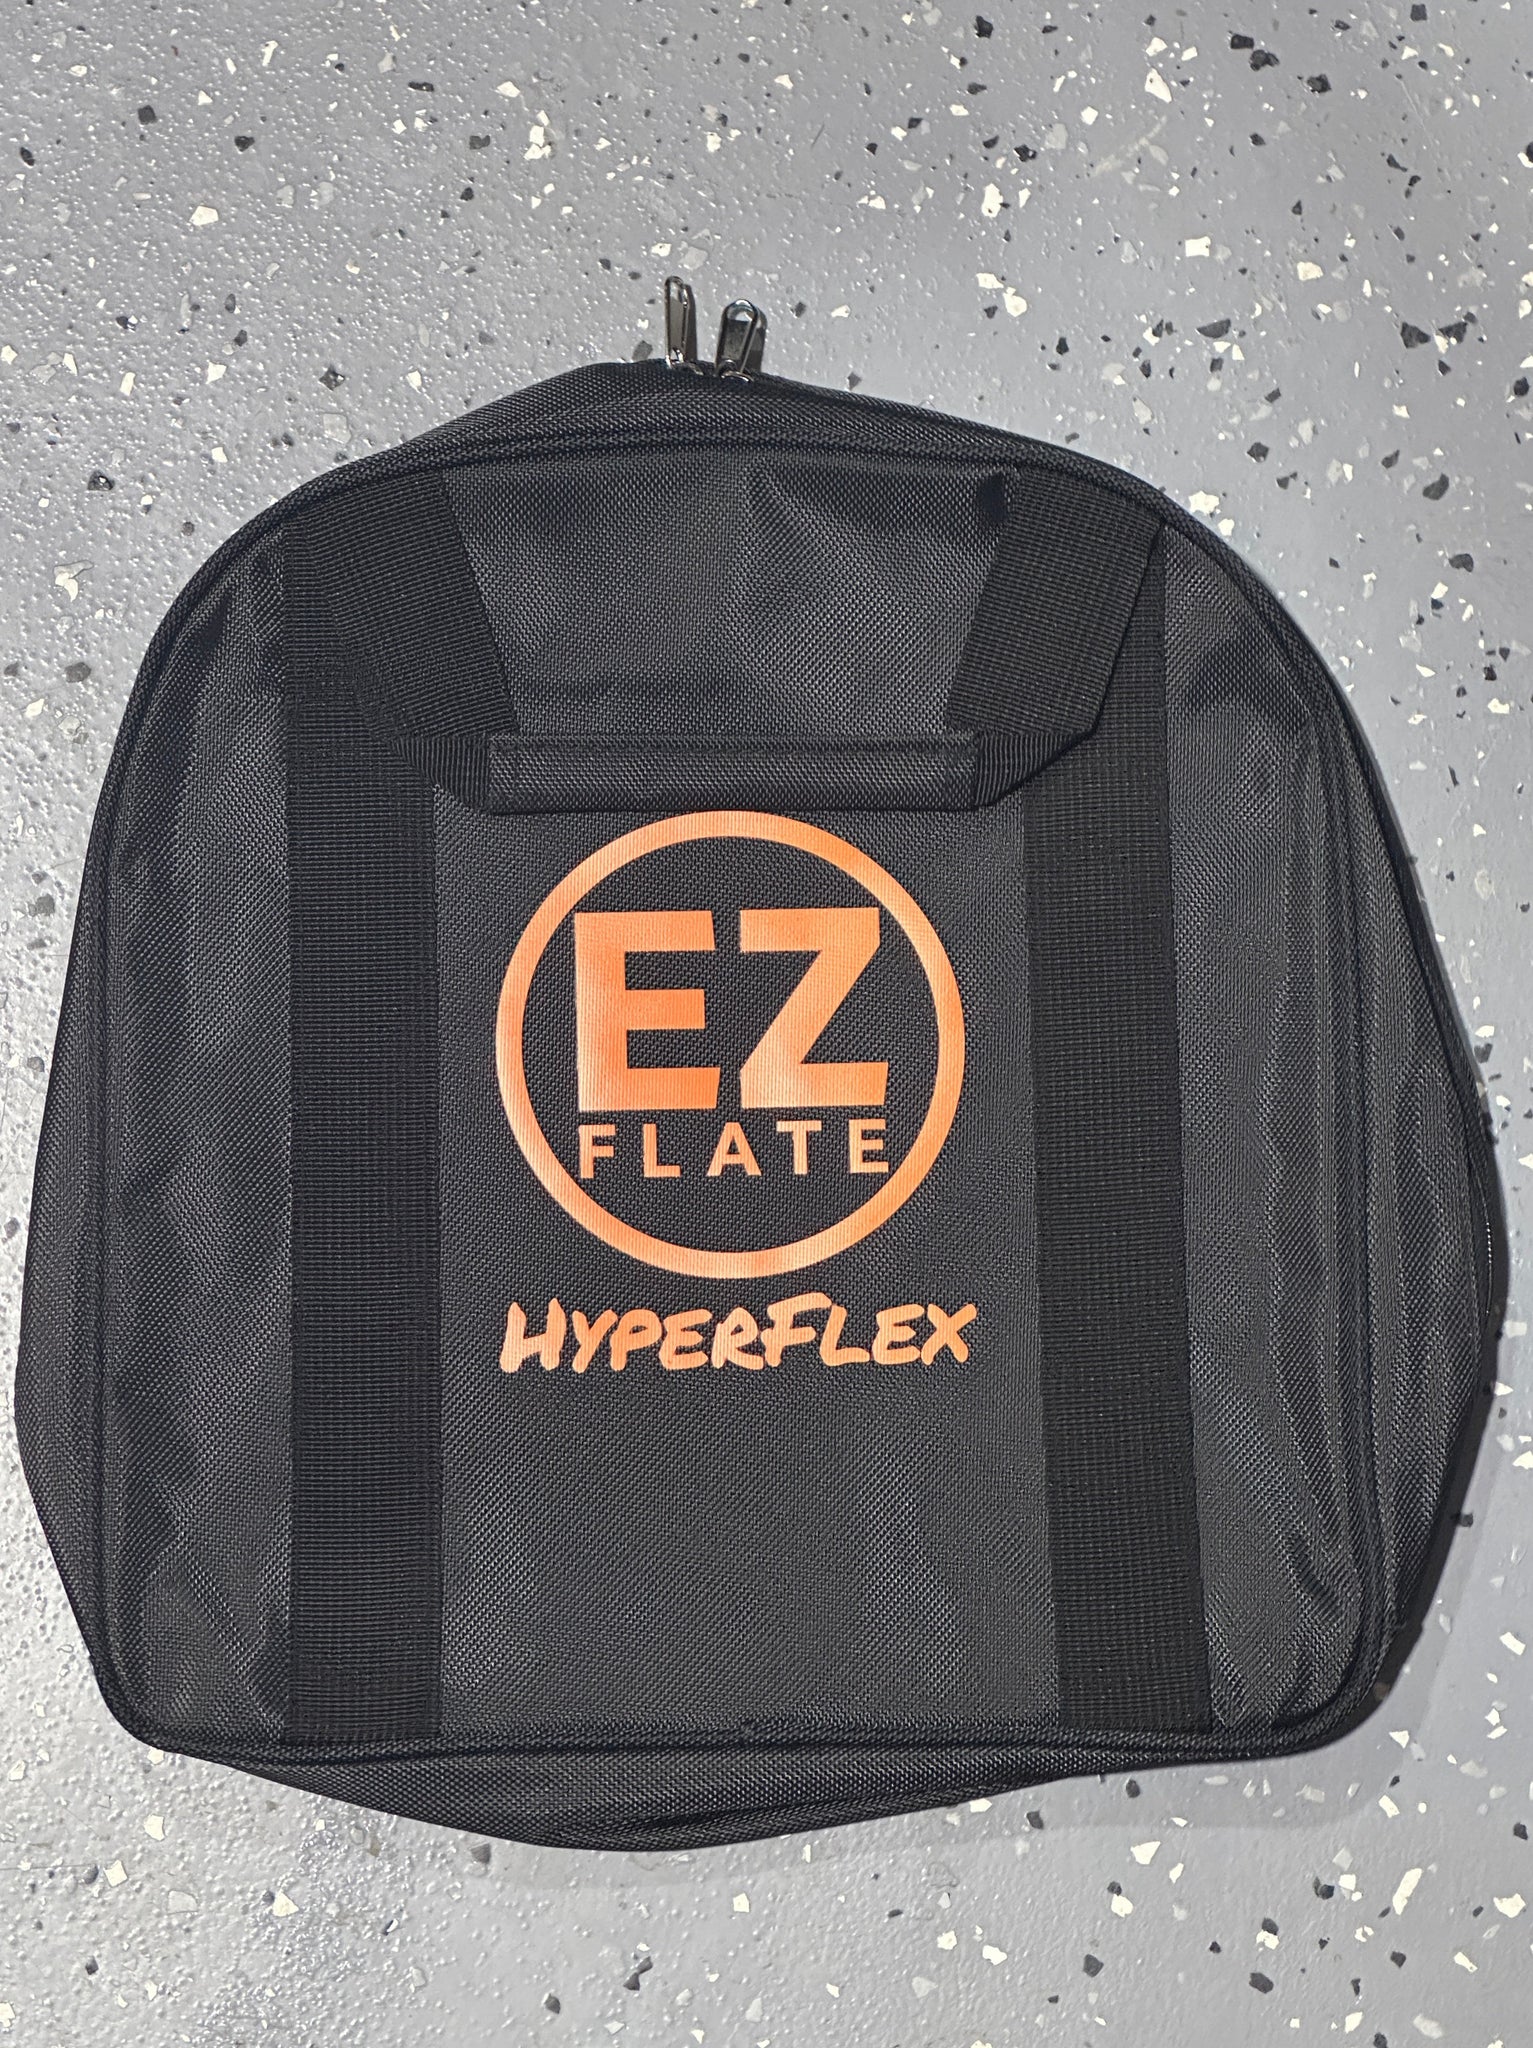 EZ FLATE Hose Bag